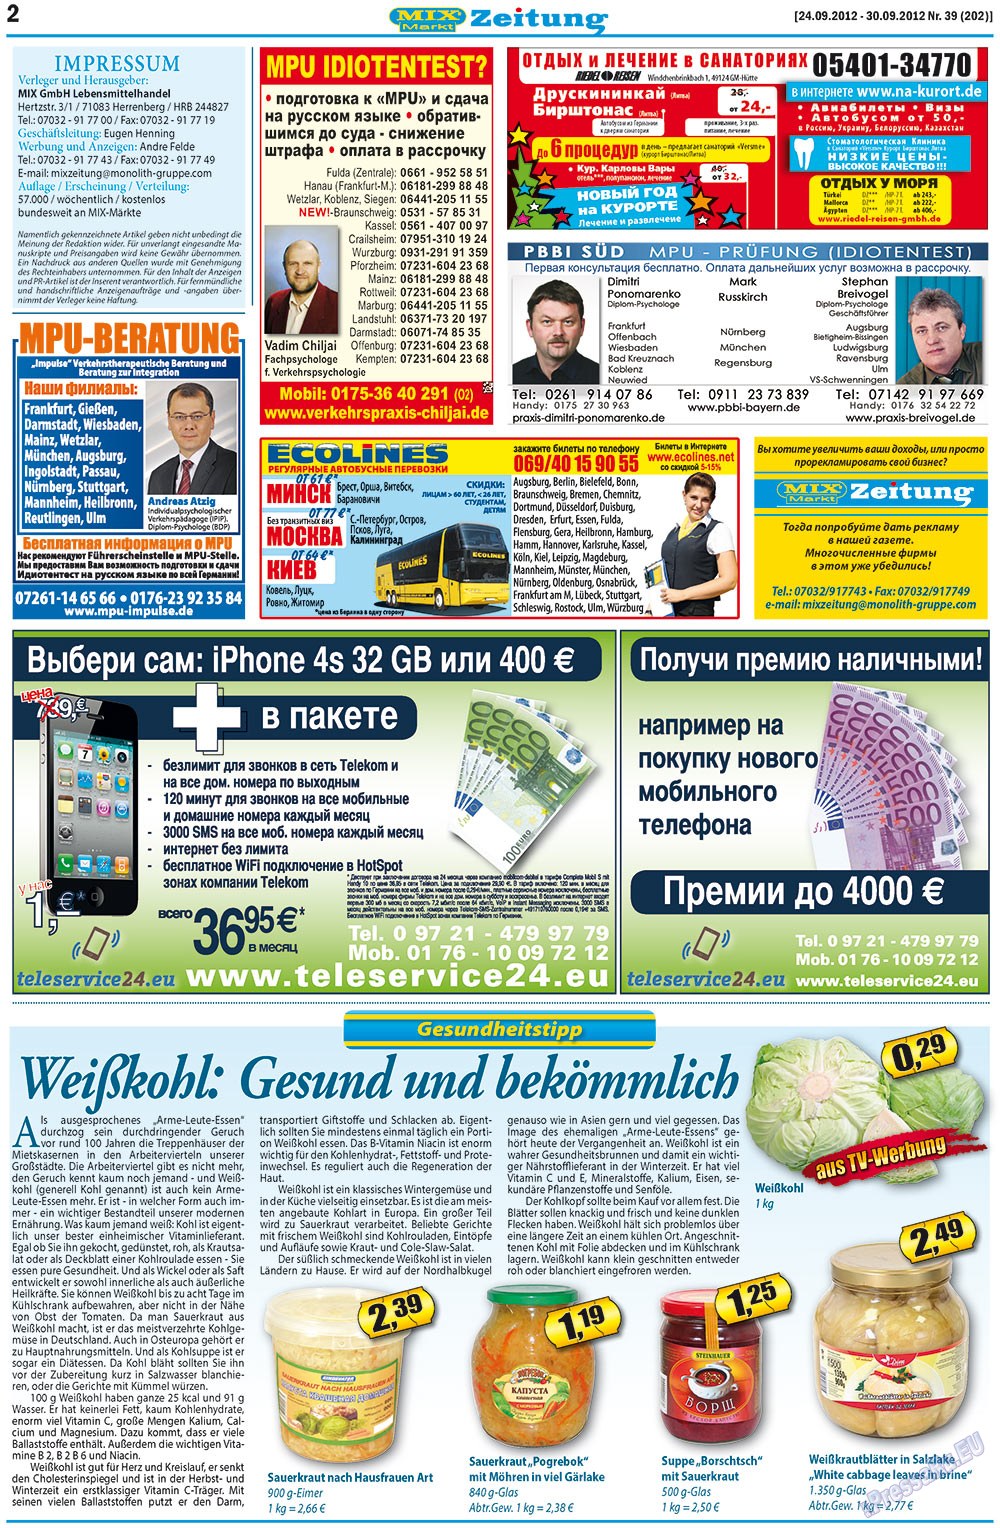 MIX-Markt Zeitung (газета). 2012 год, номер 39, стр. 2